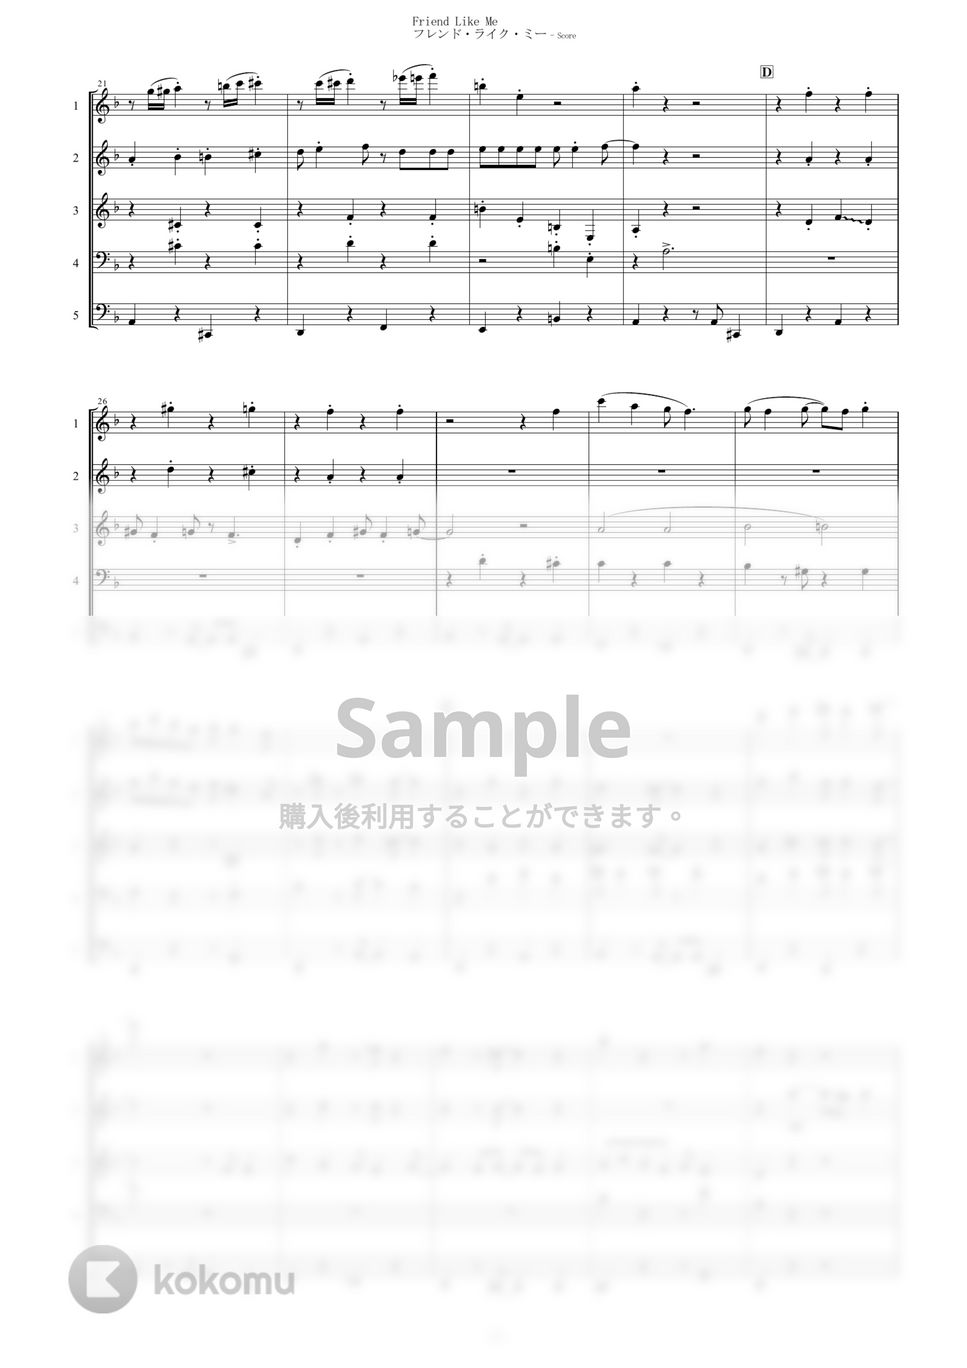 アラジン - フレンド・ライク・ミー (5重奏) by muta-sax